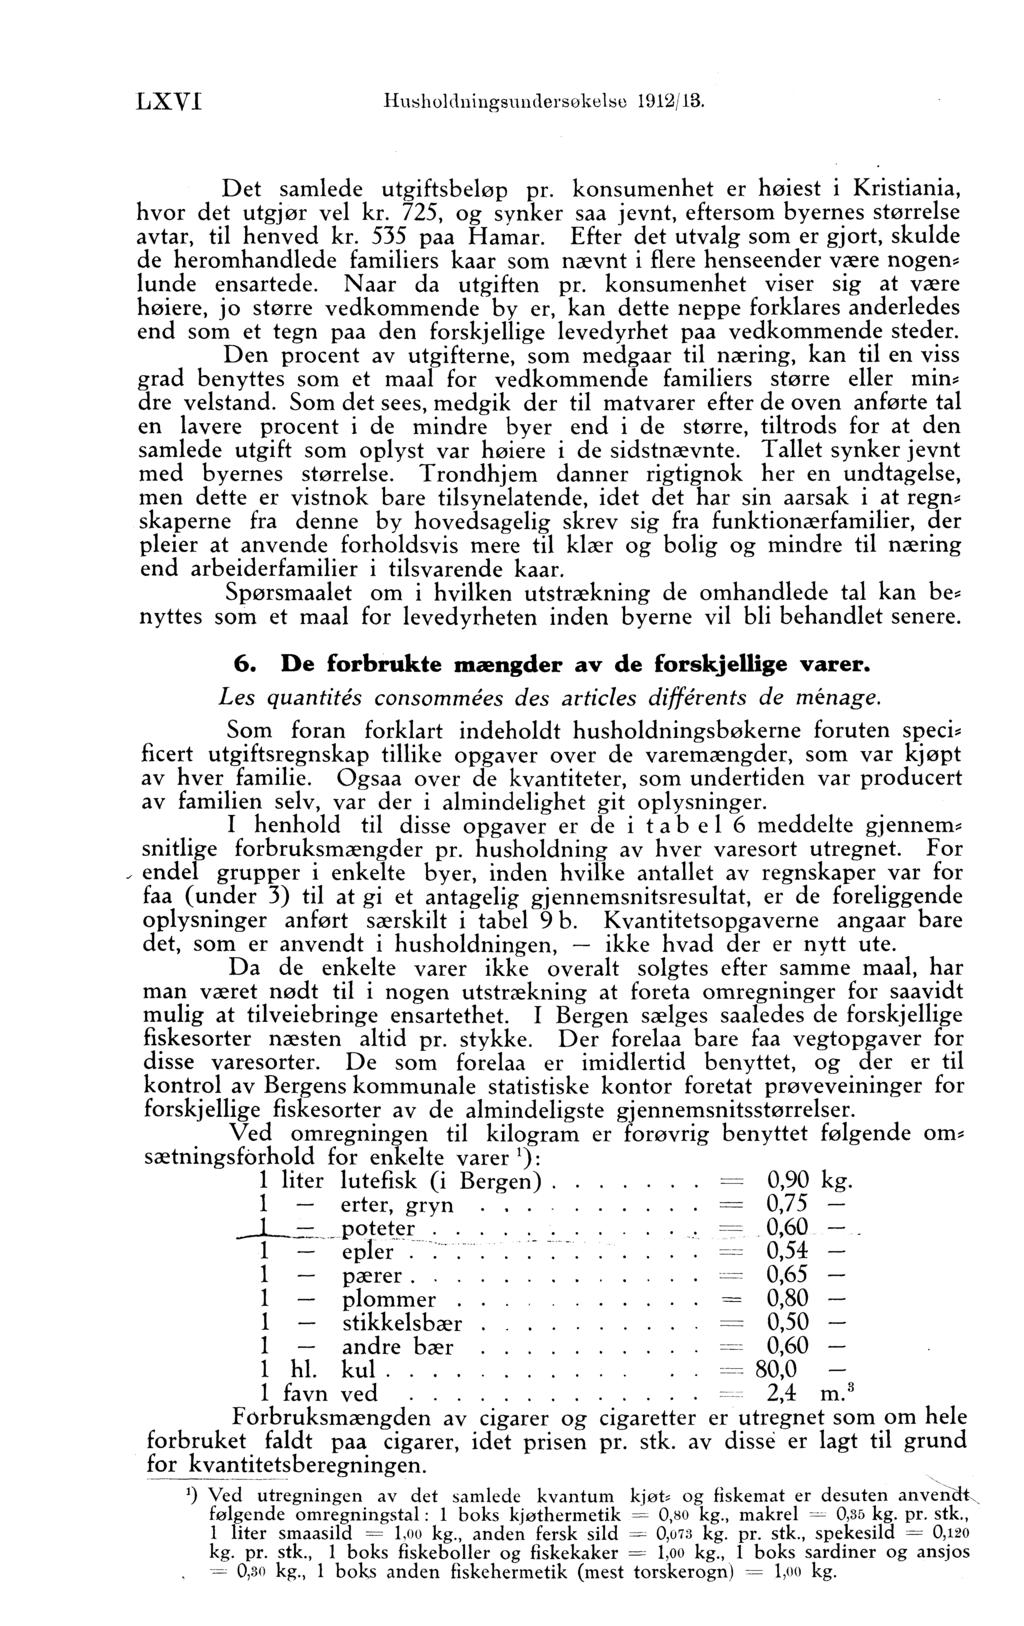 LXVI Husholdningsundersokelse 1912/13. Det samlede utgiftsbeløp pr. konsumenhet er højest j Kristiania, hvor det utgjør vel kr.